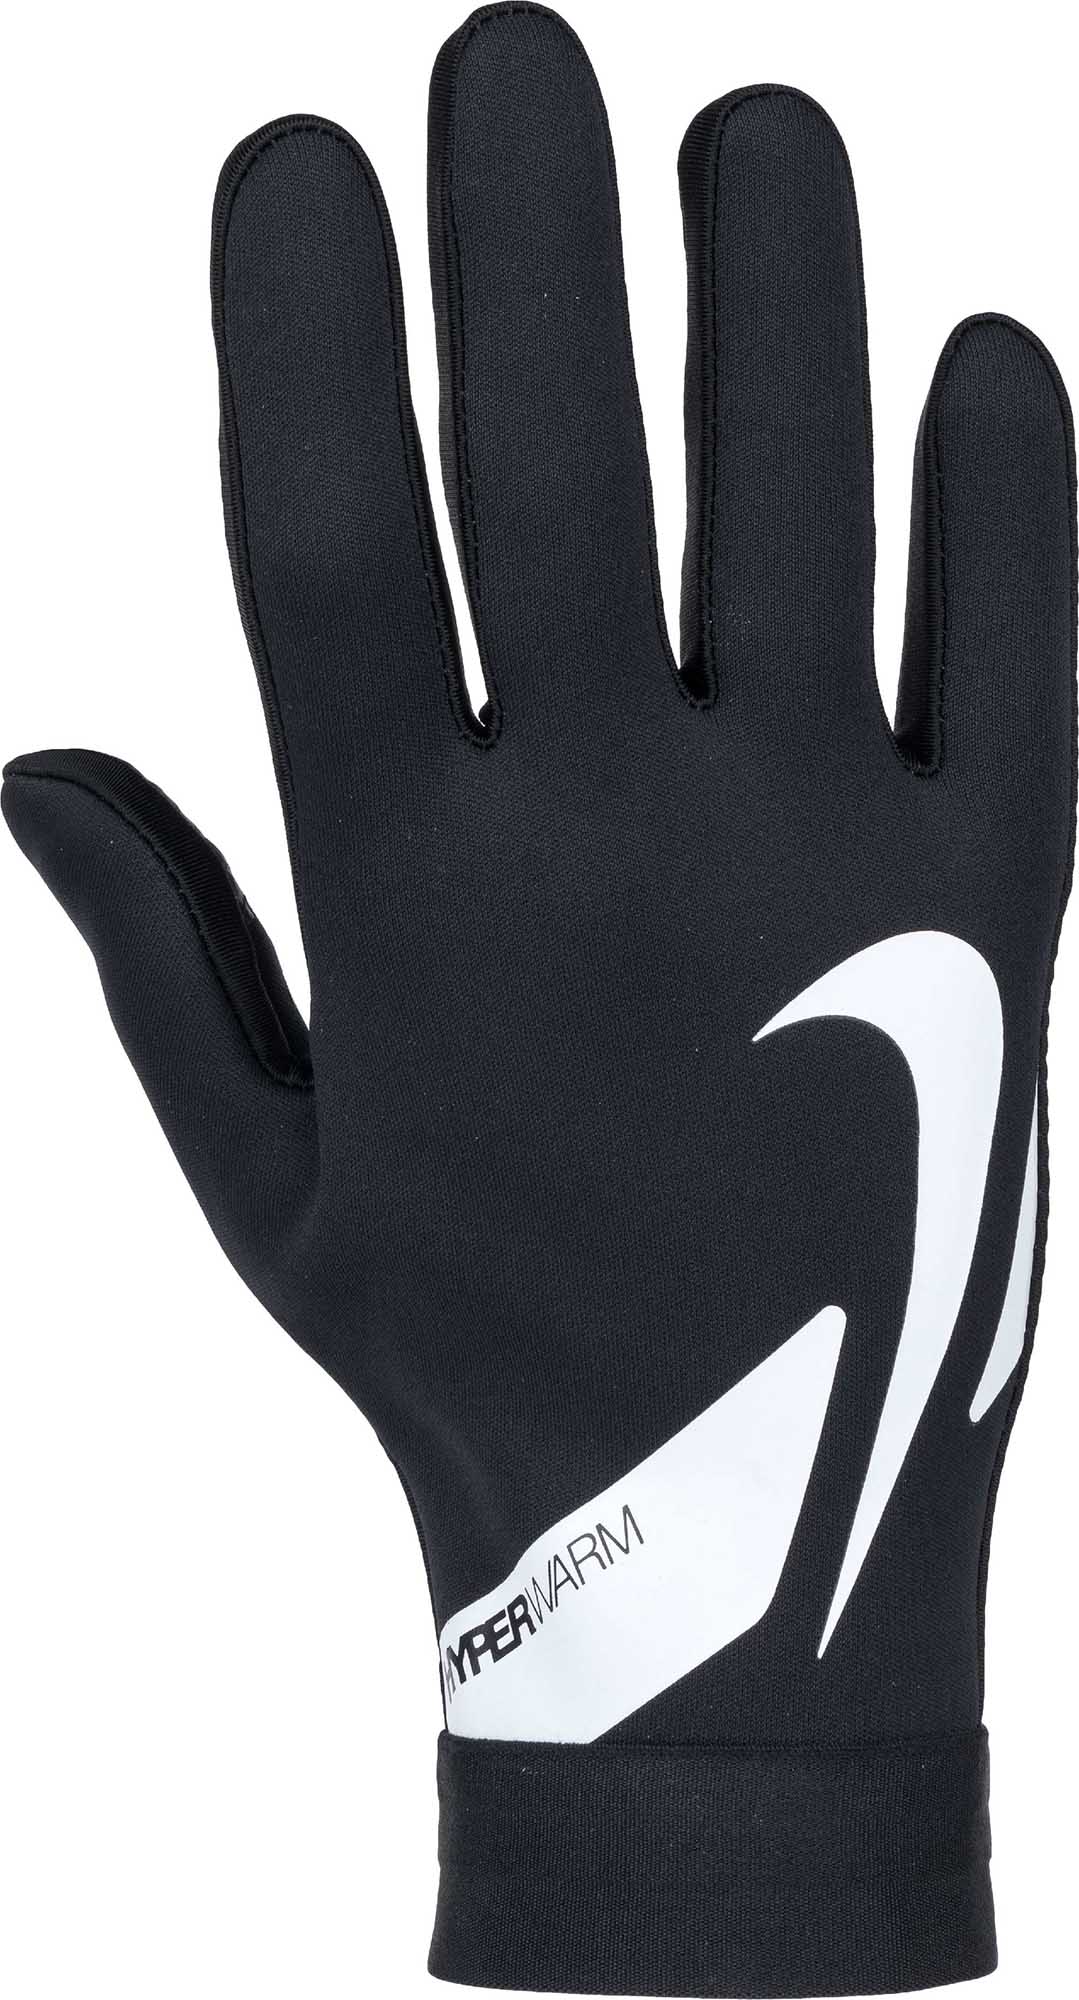 Men’s football gloves